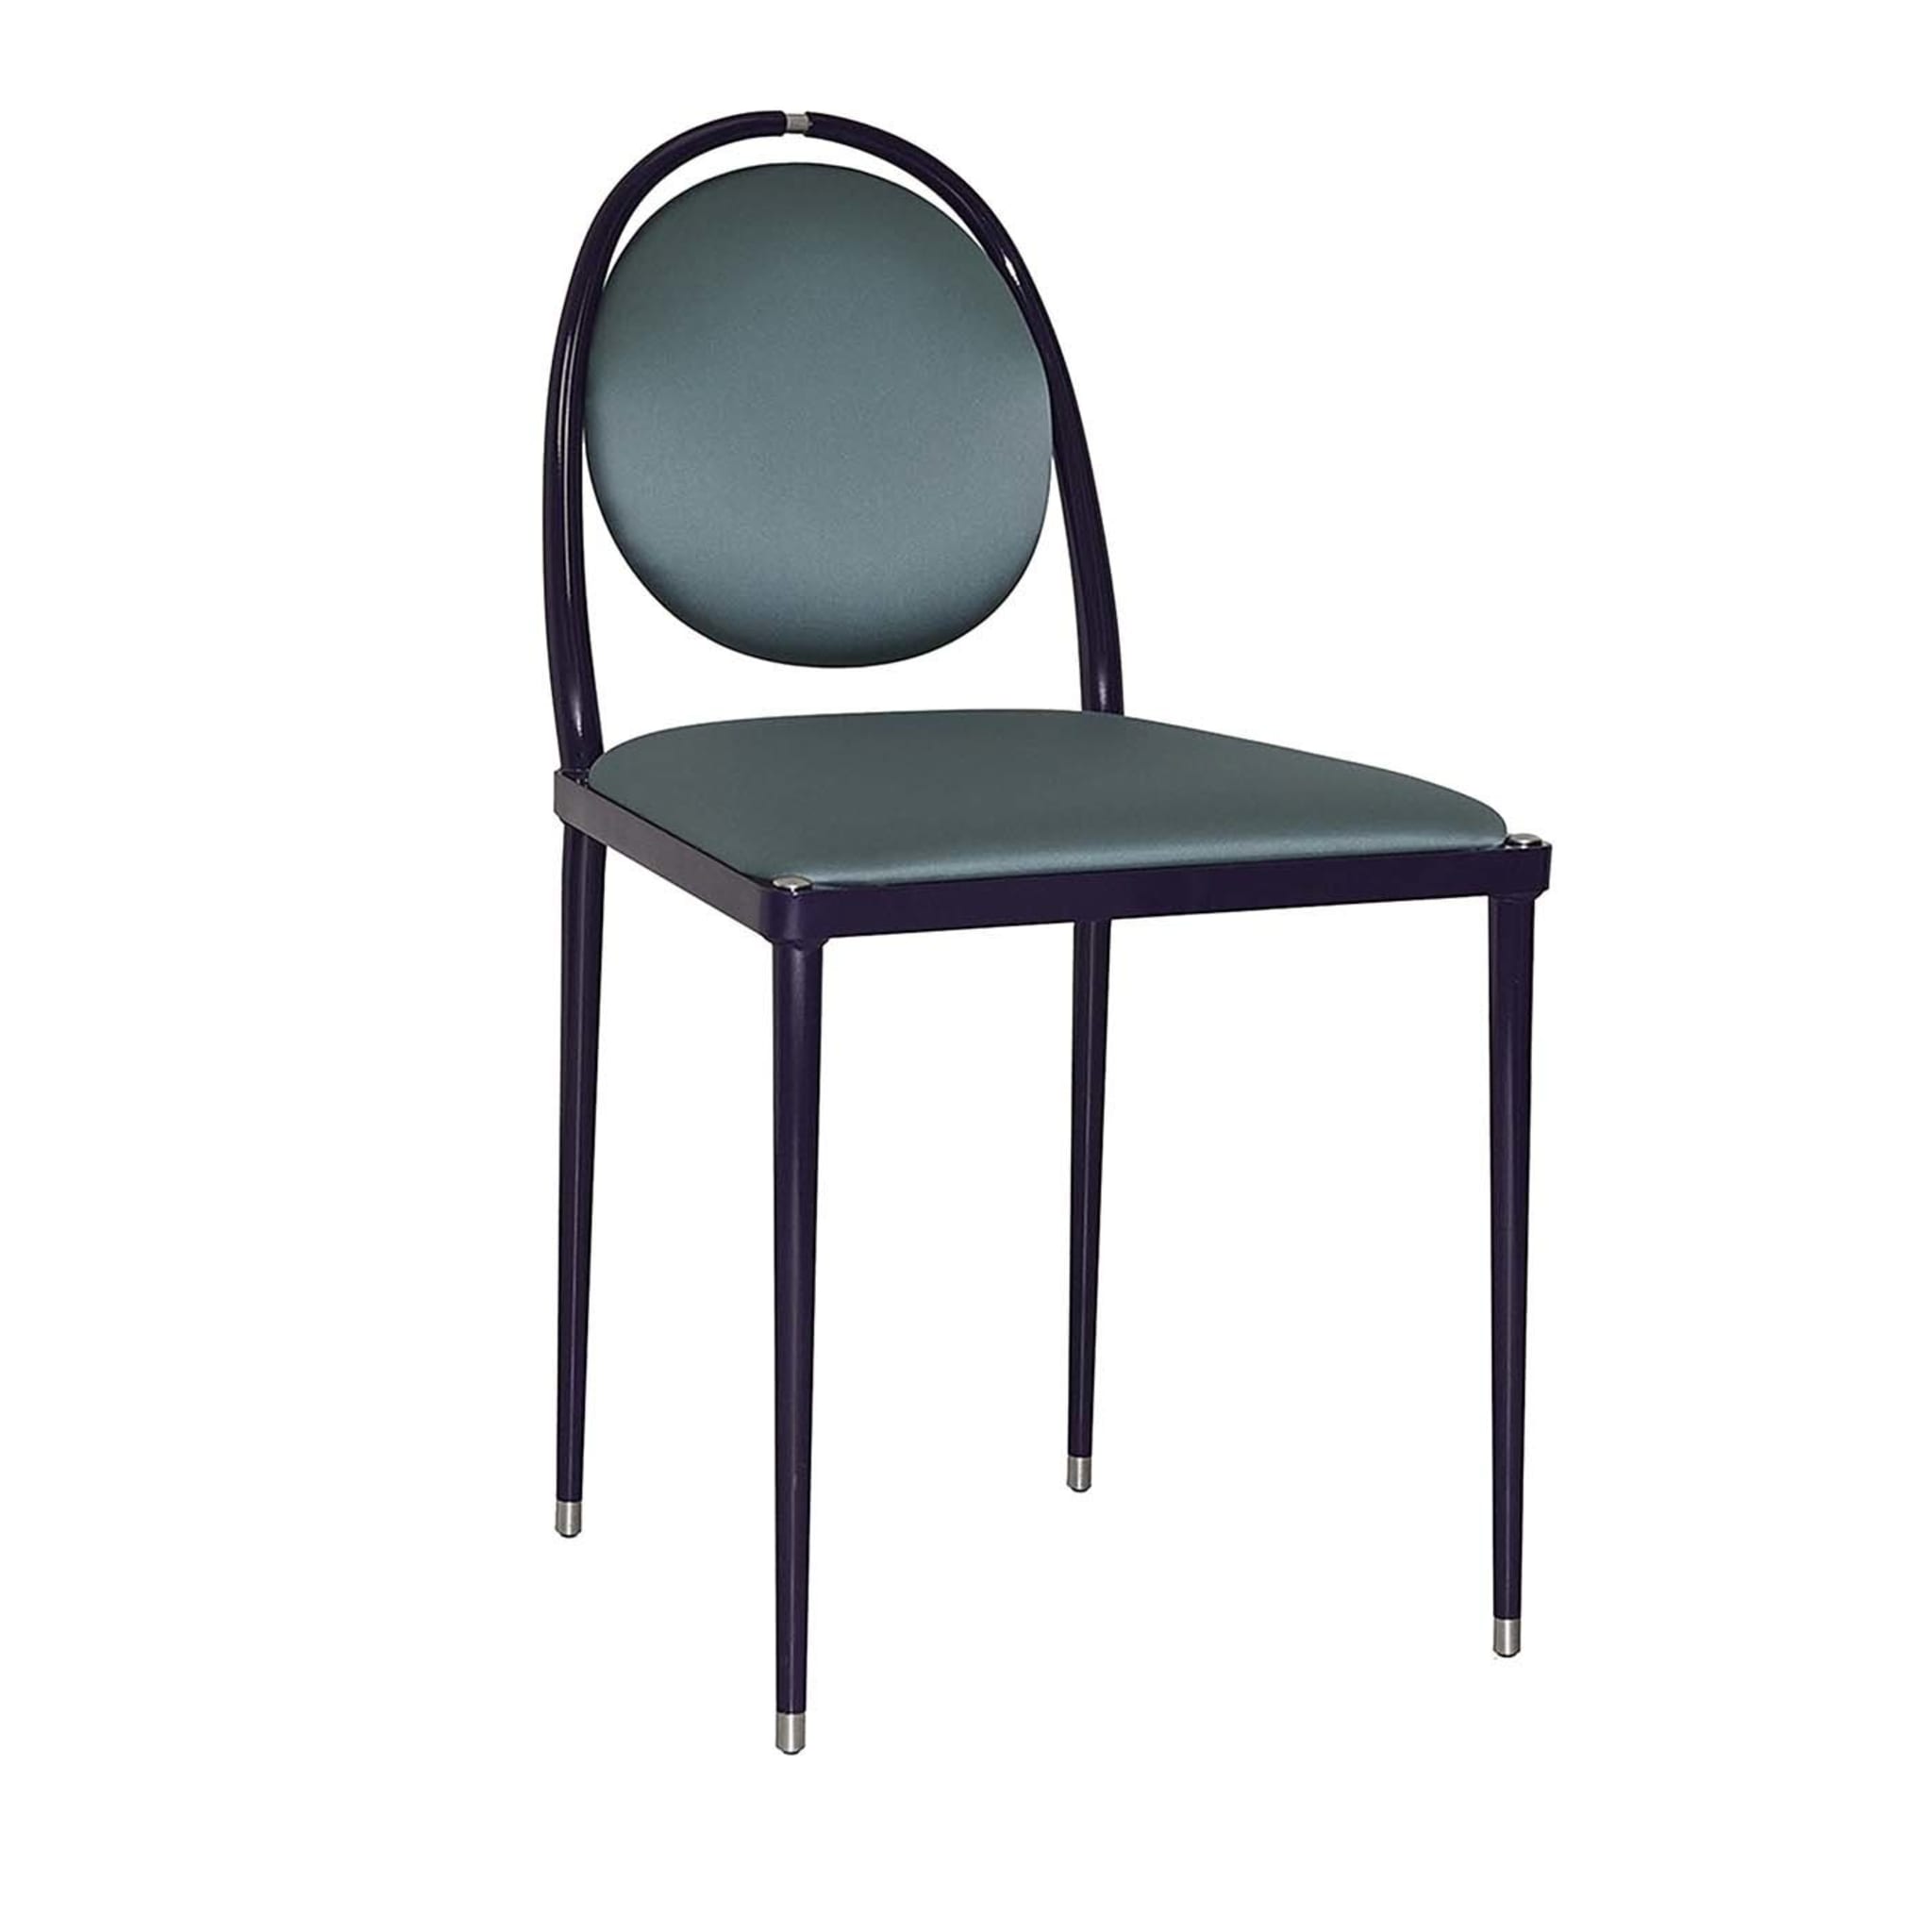 Balzaretti Teal Blue Chair - Main view